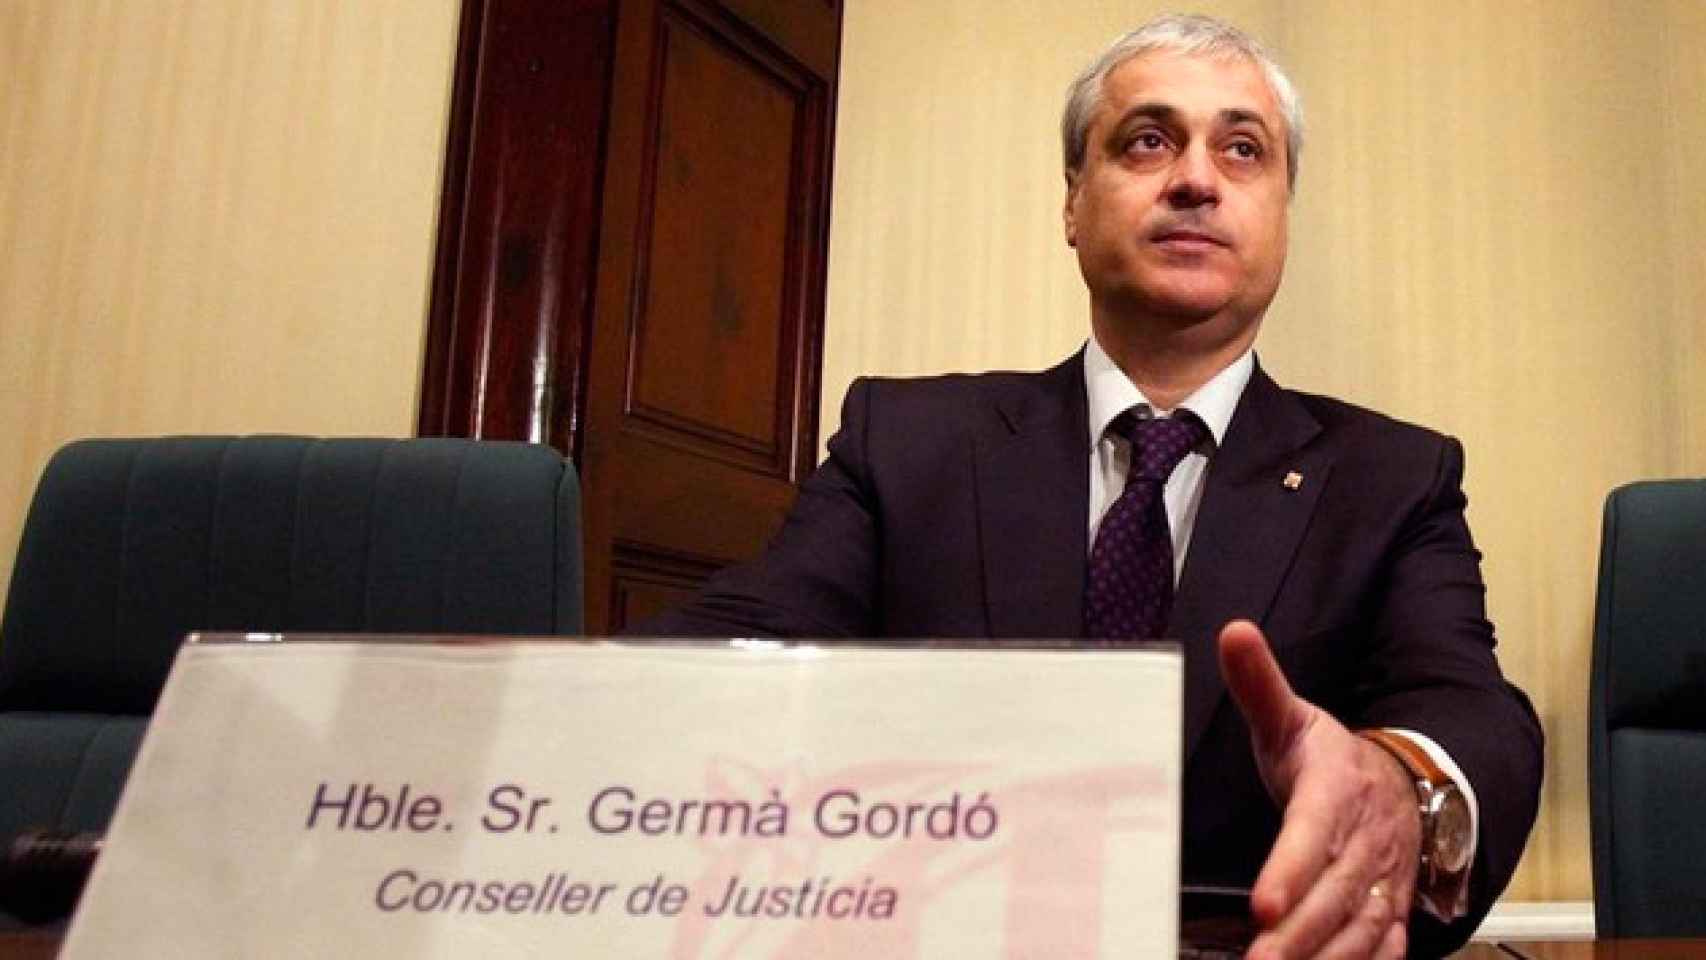 Germà Gordó, el exconsejero de Justicia de la Generalitat / CG